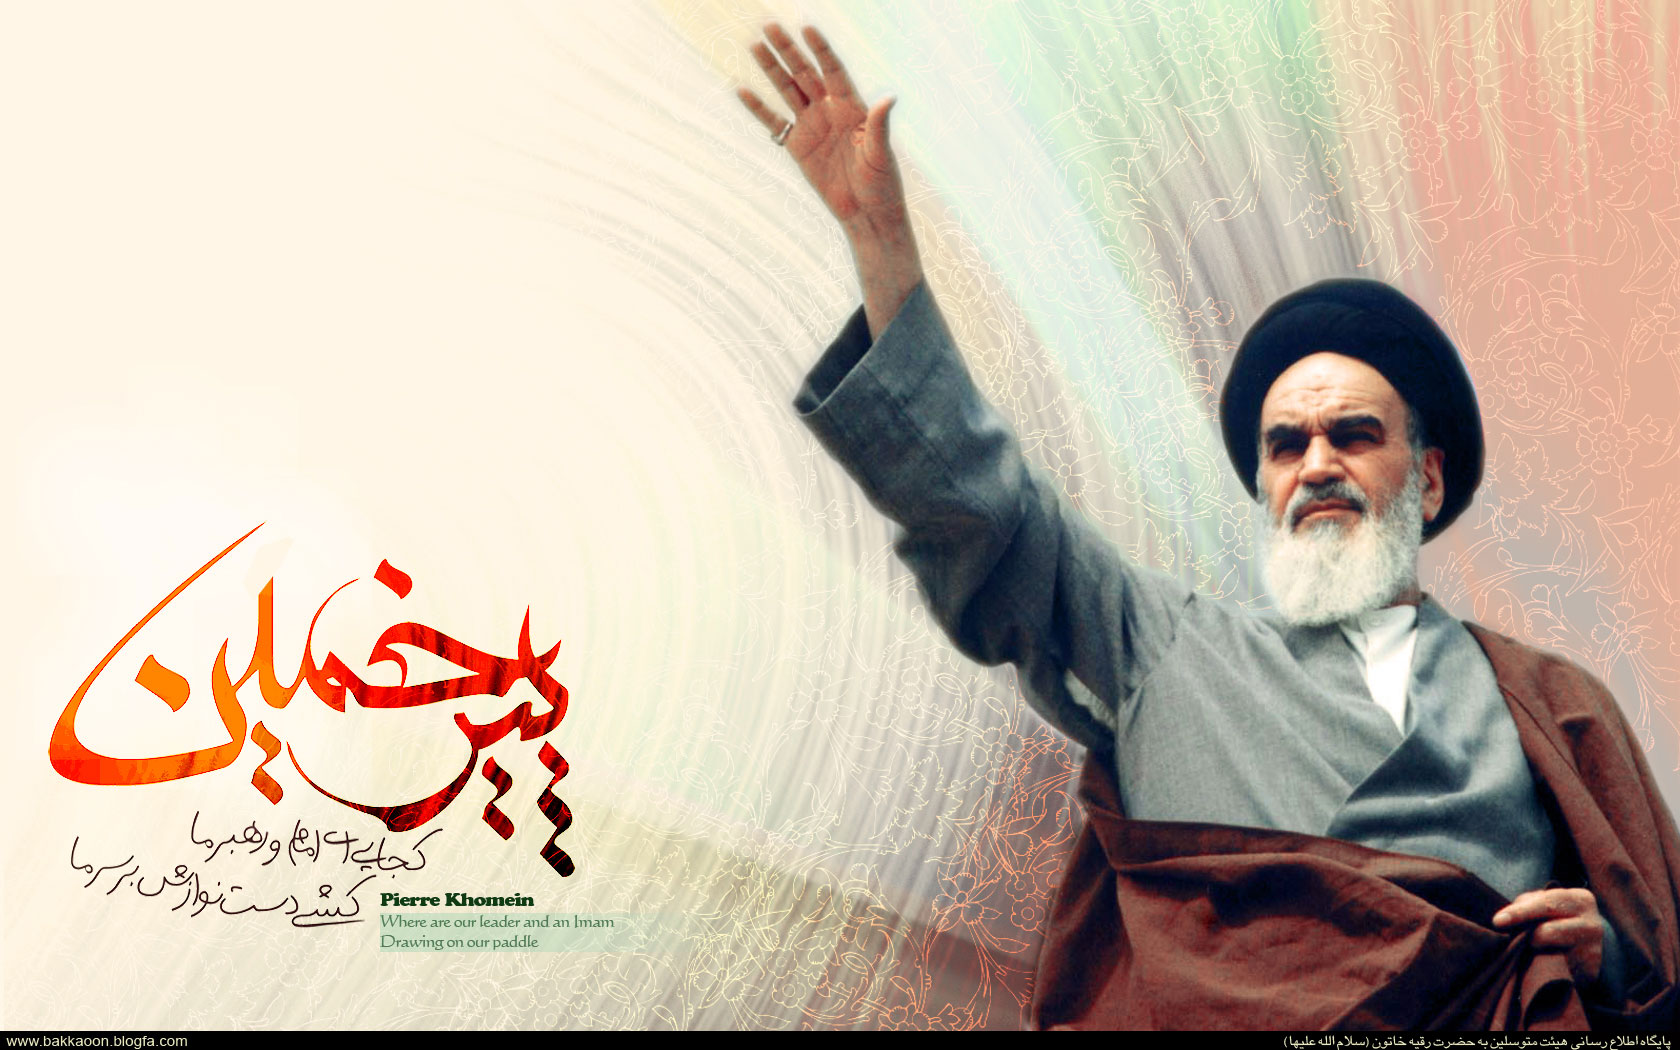 Дискурс Сопротивления: имам Хомейни и борьба против сионизма и американской гегемонии